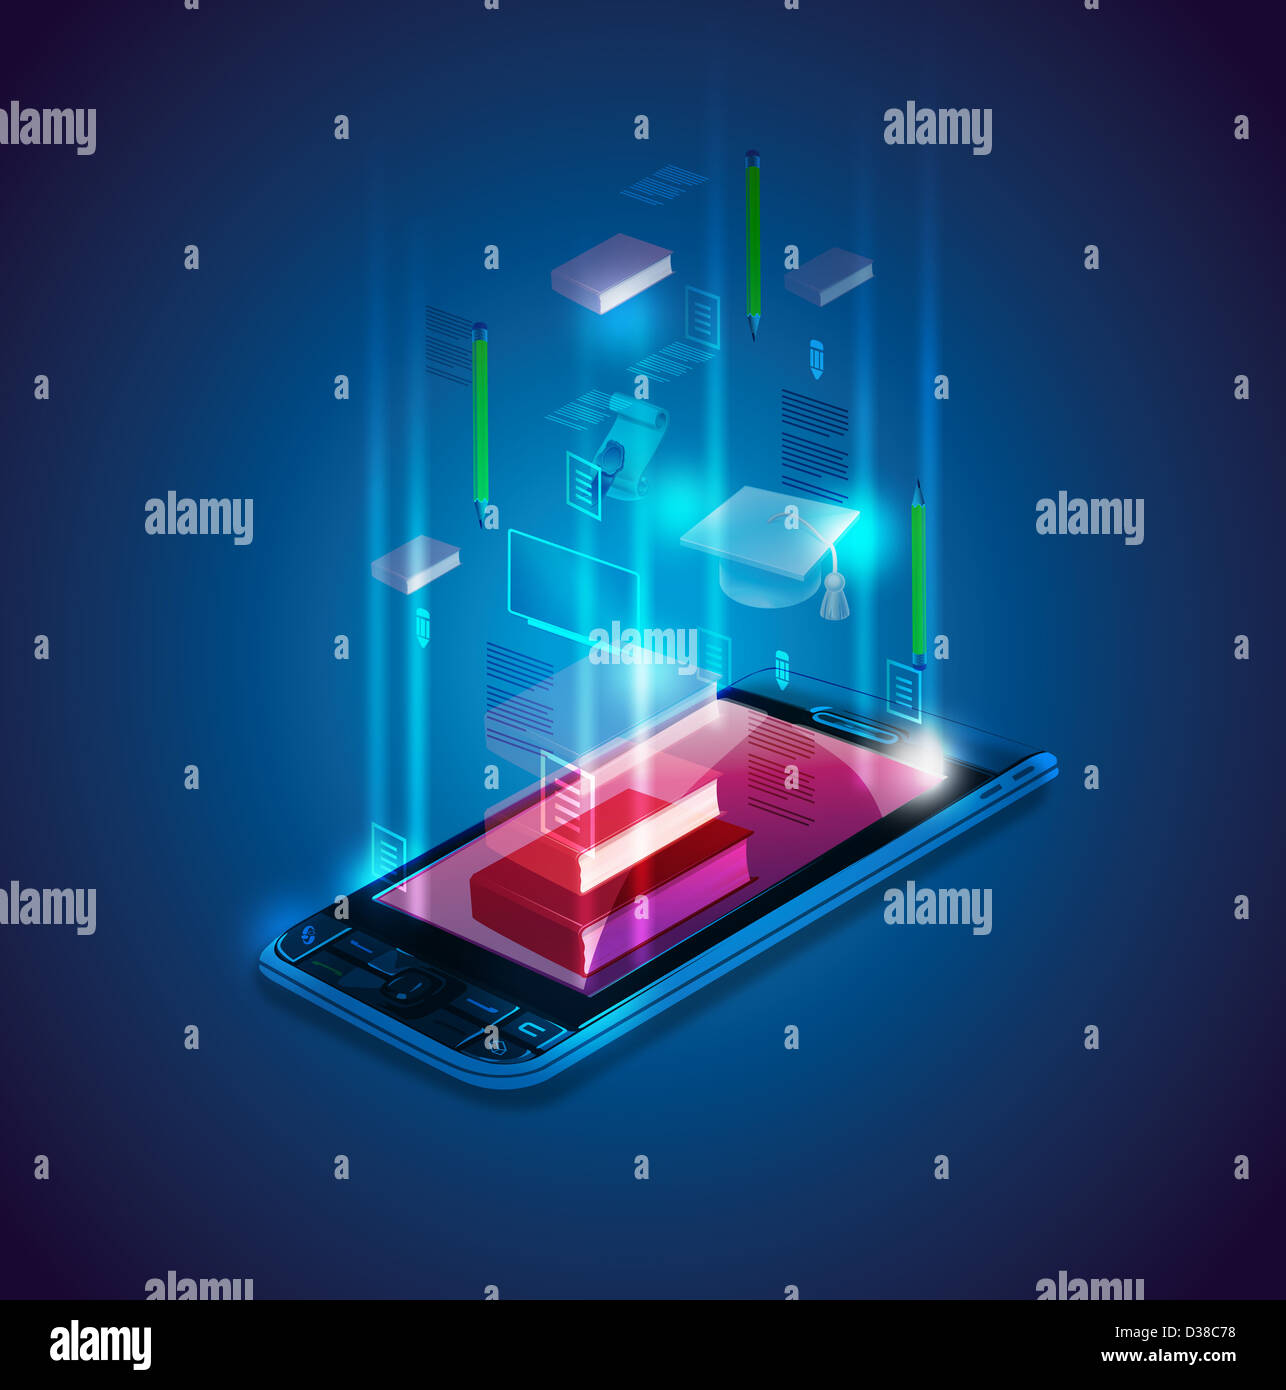 Immagine illustrativa del telefono mobile che raffigura il concetto di e-learning Foto Stock